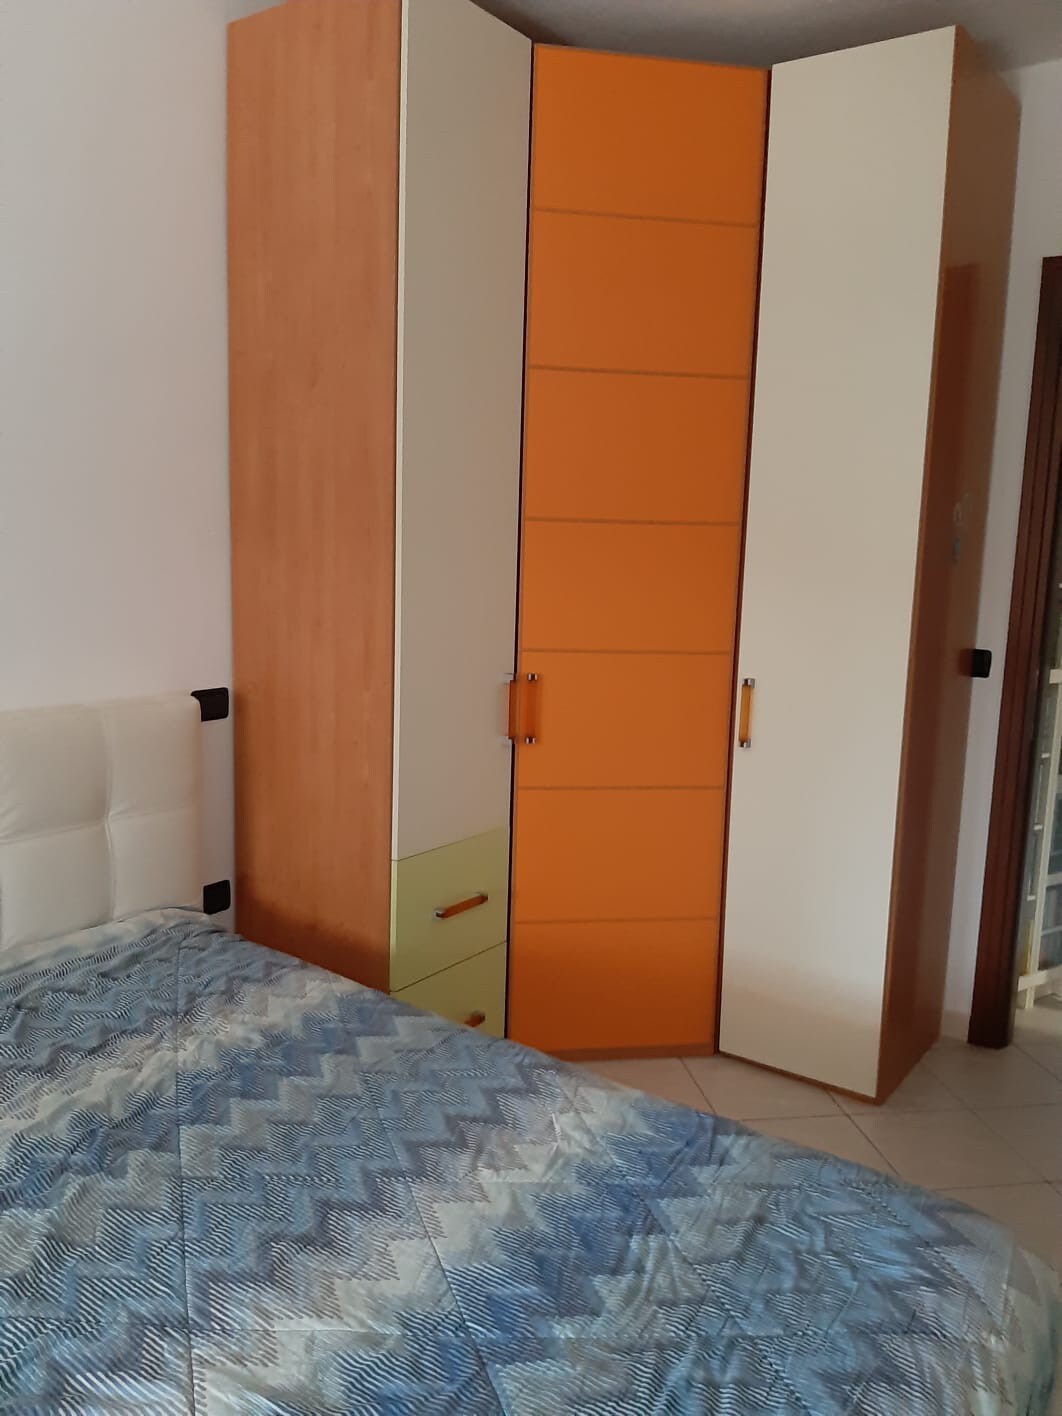 Camera arancione e bagno privato